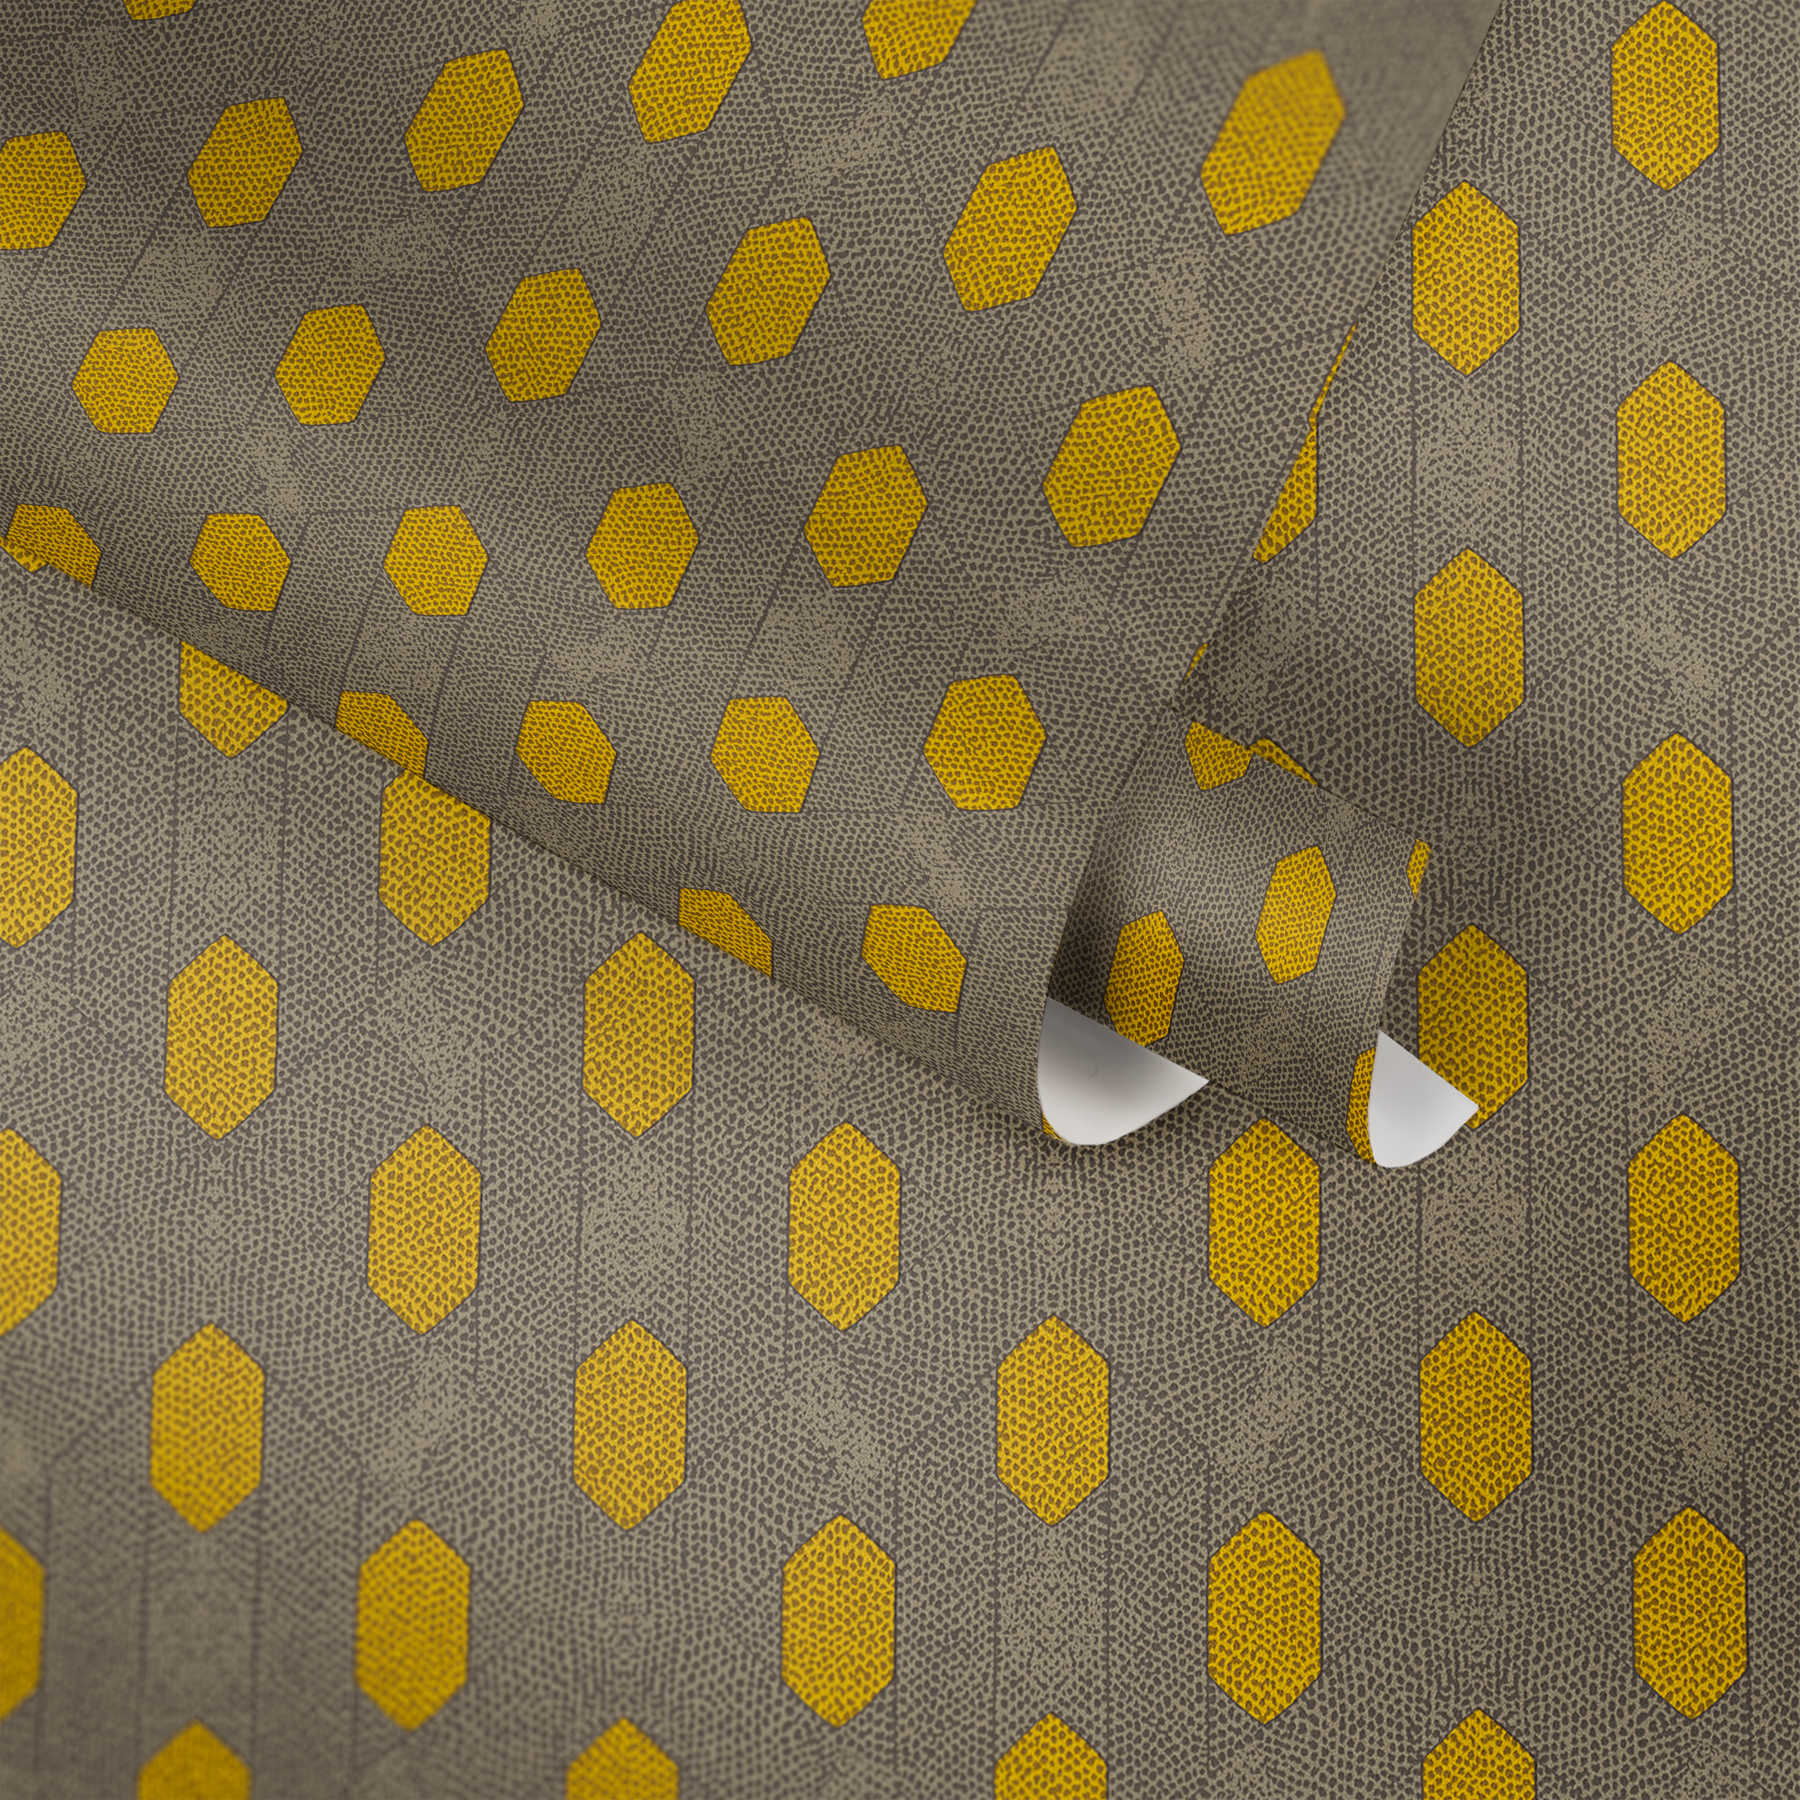             Papier peint intissé à motifs géométriques à pois - jaune, gris, marron
        